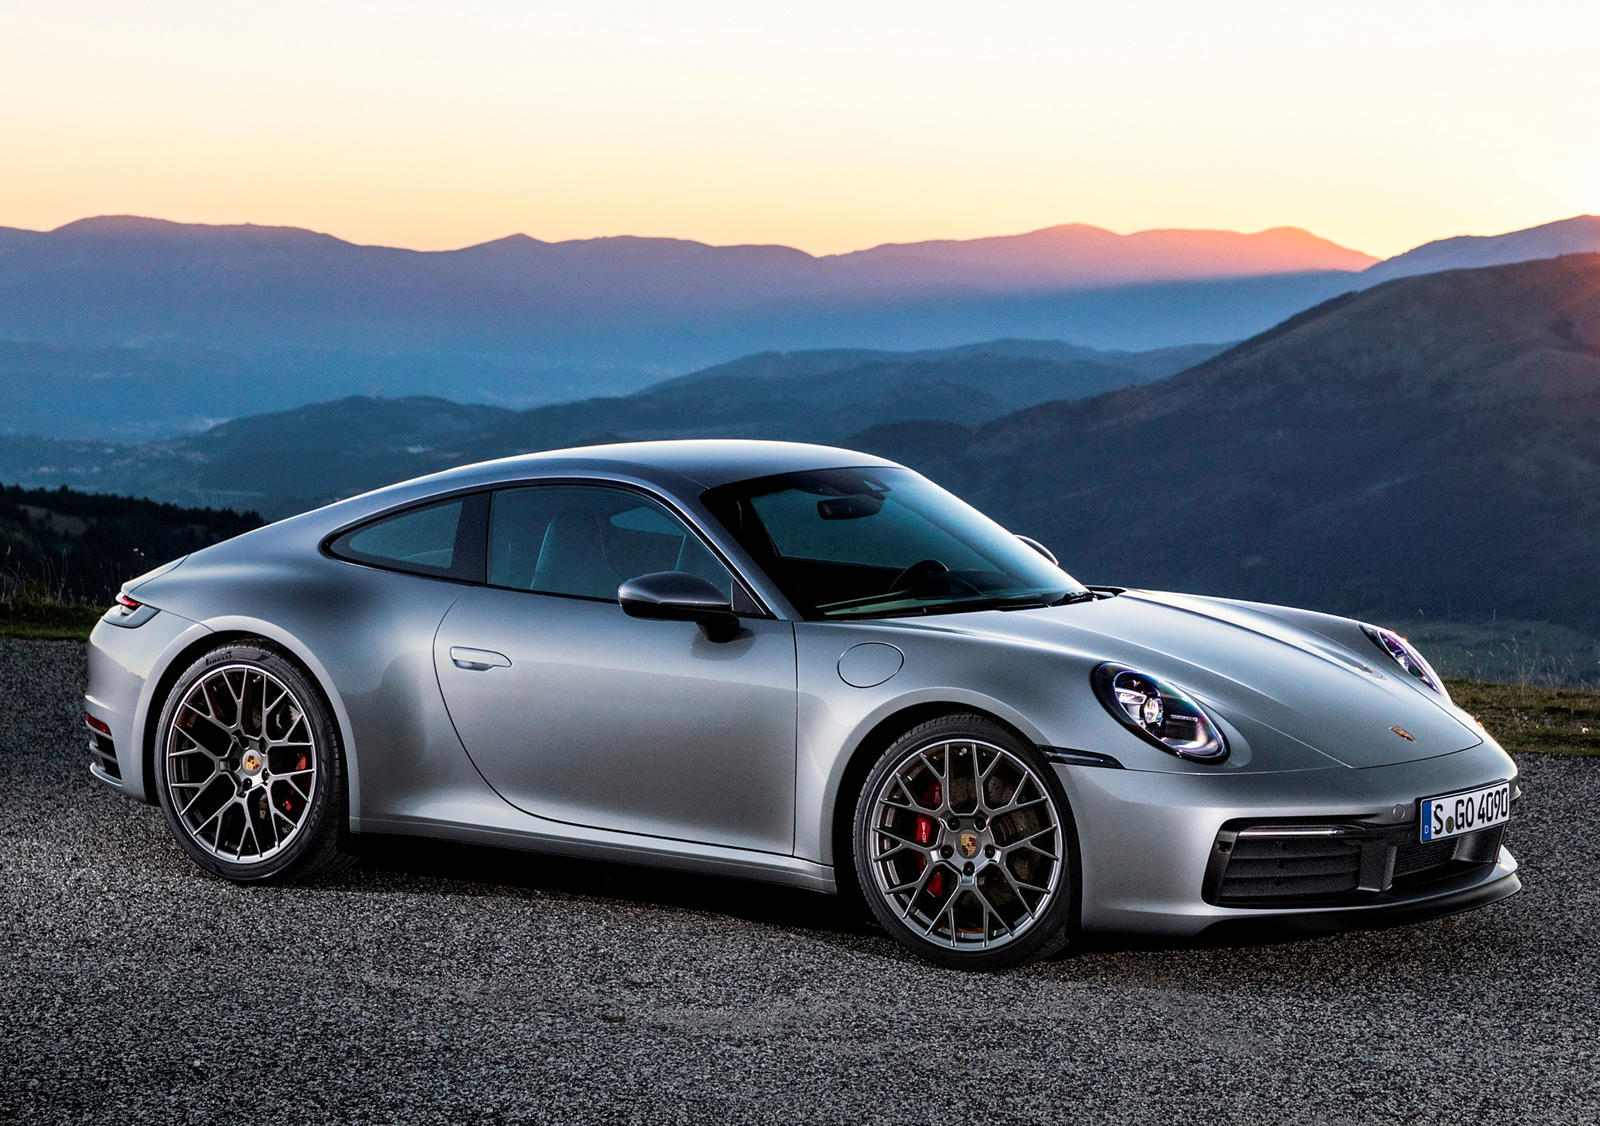 Porsche ждет развития технологии батареи, прежде чем она выпустит самый мощный когда-либо сделанный Porsche 911.